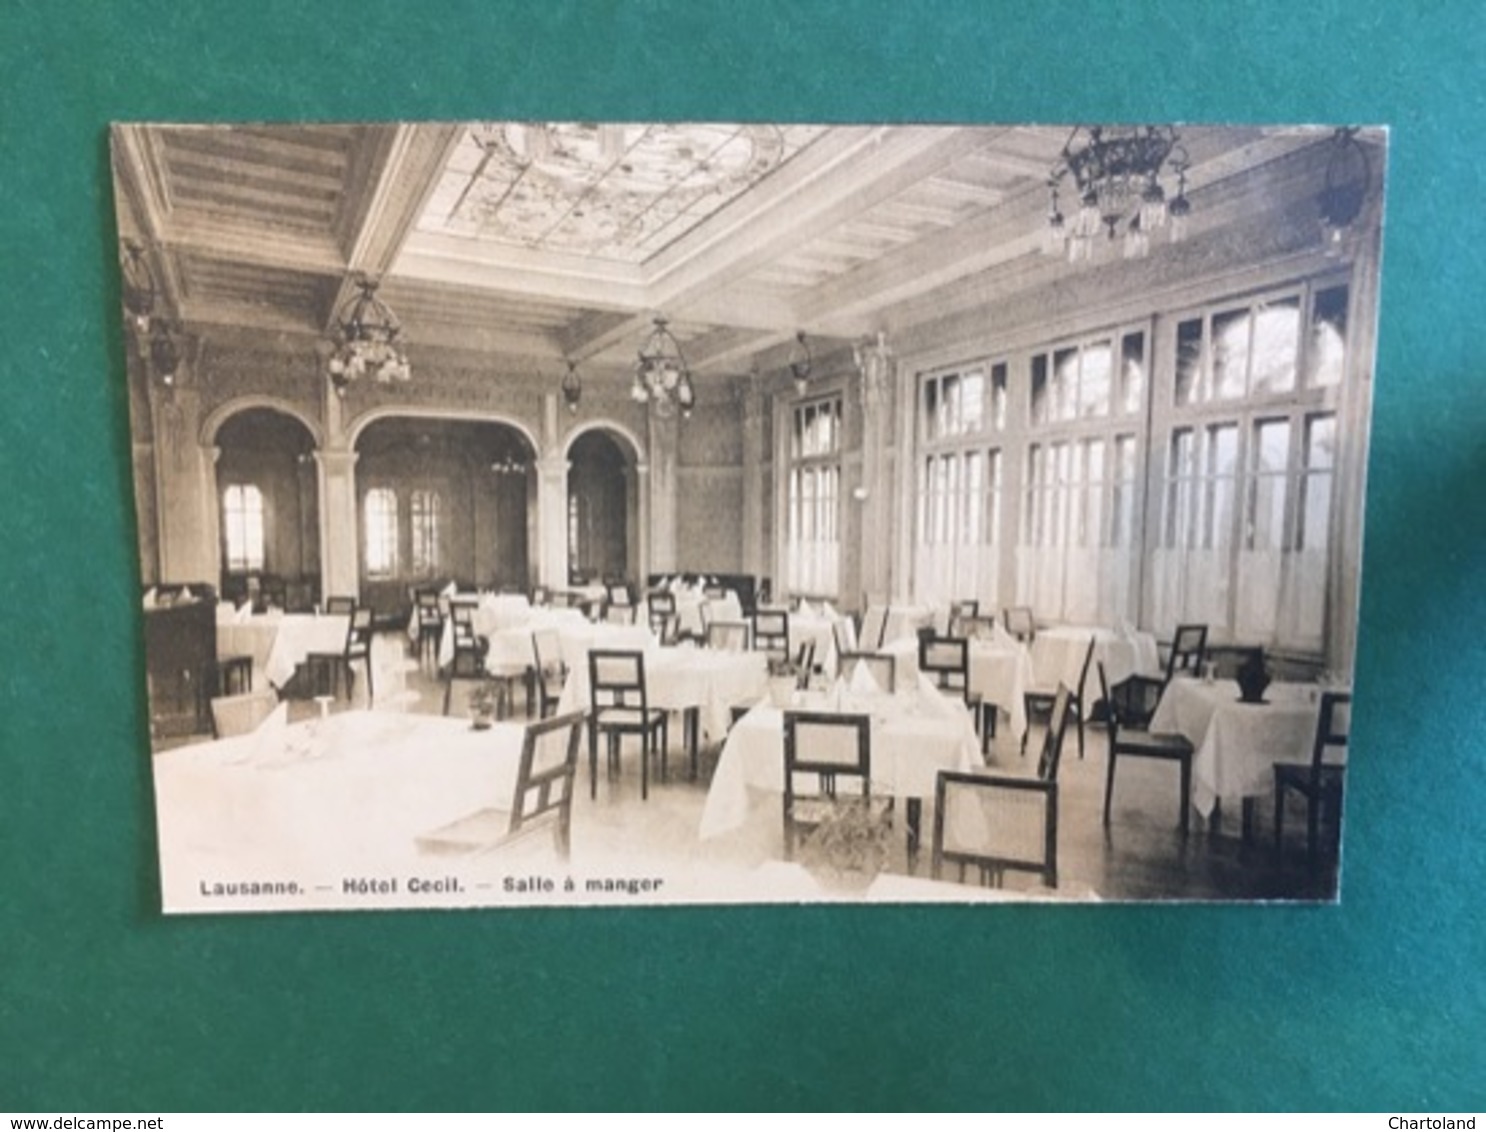 Cartoline Lausanne. - Hotel Cecil. - Salle A Manger - 1920 Ca. - Non Classificati